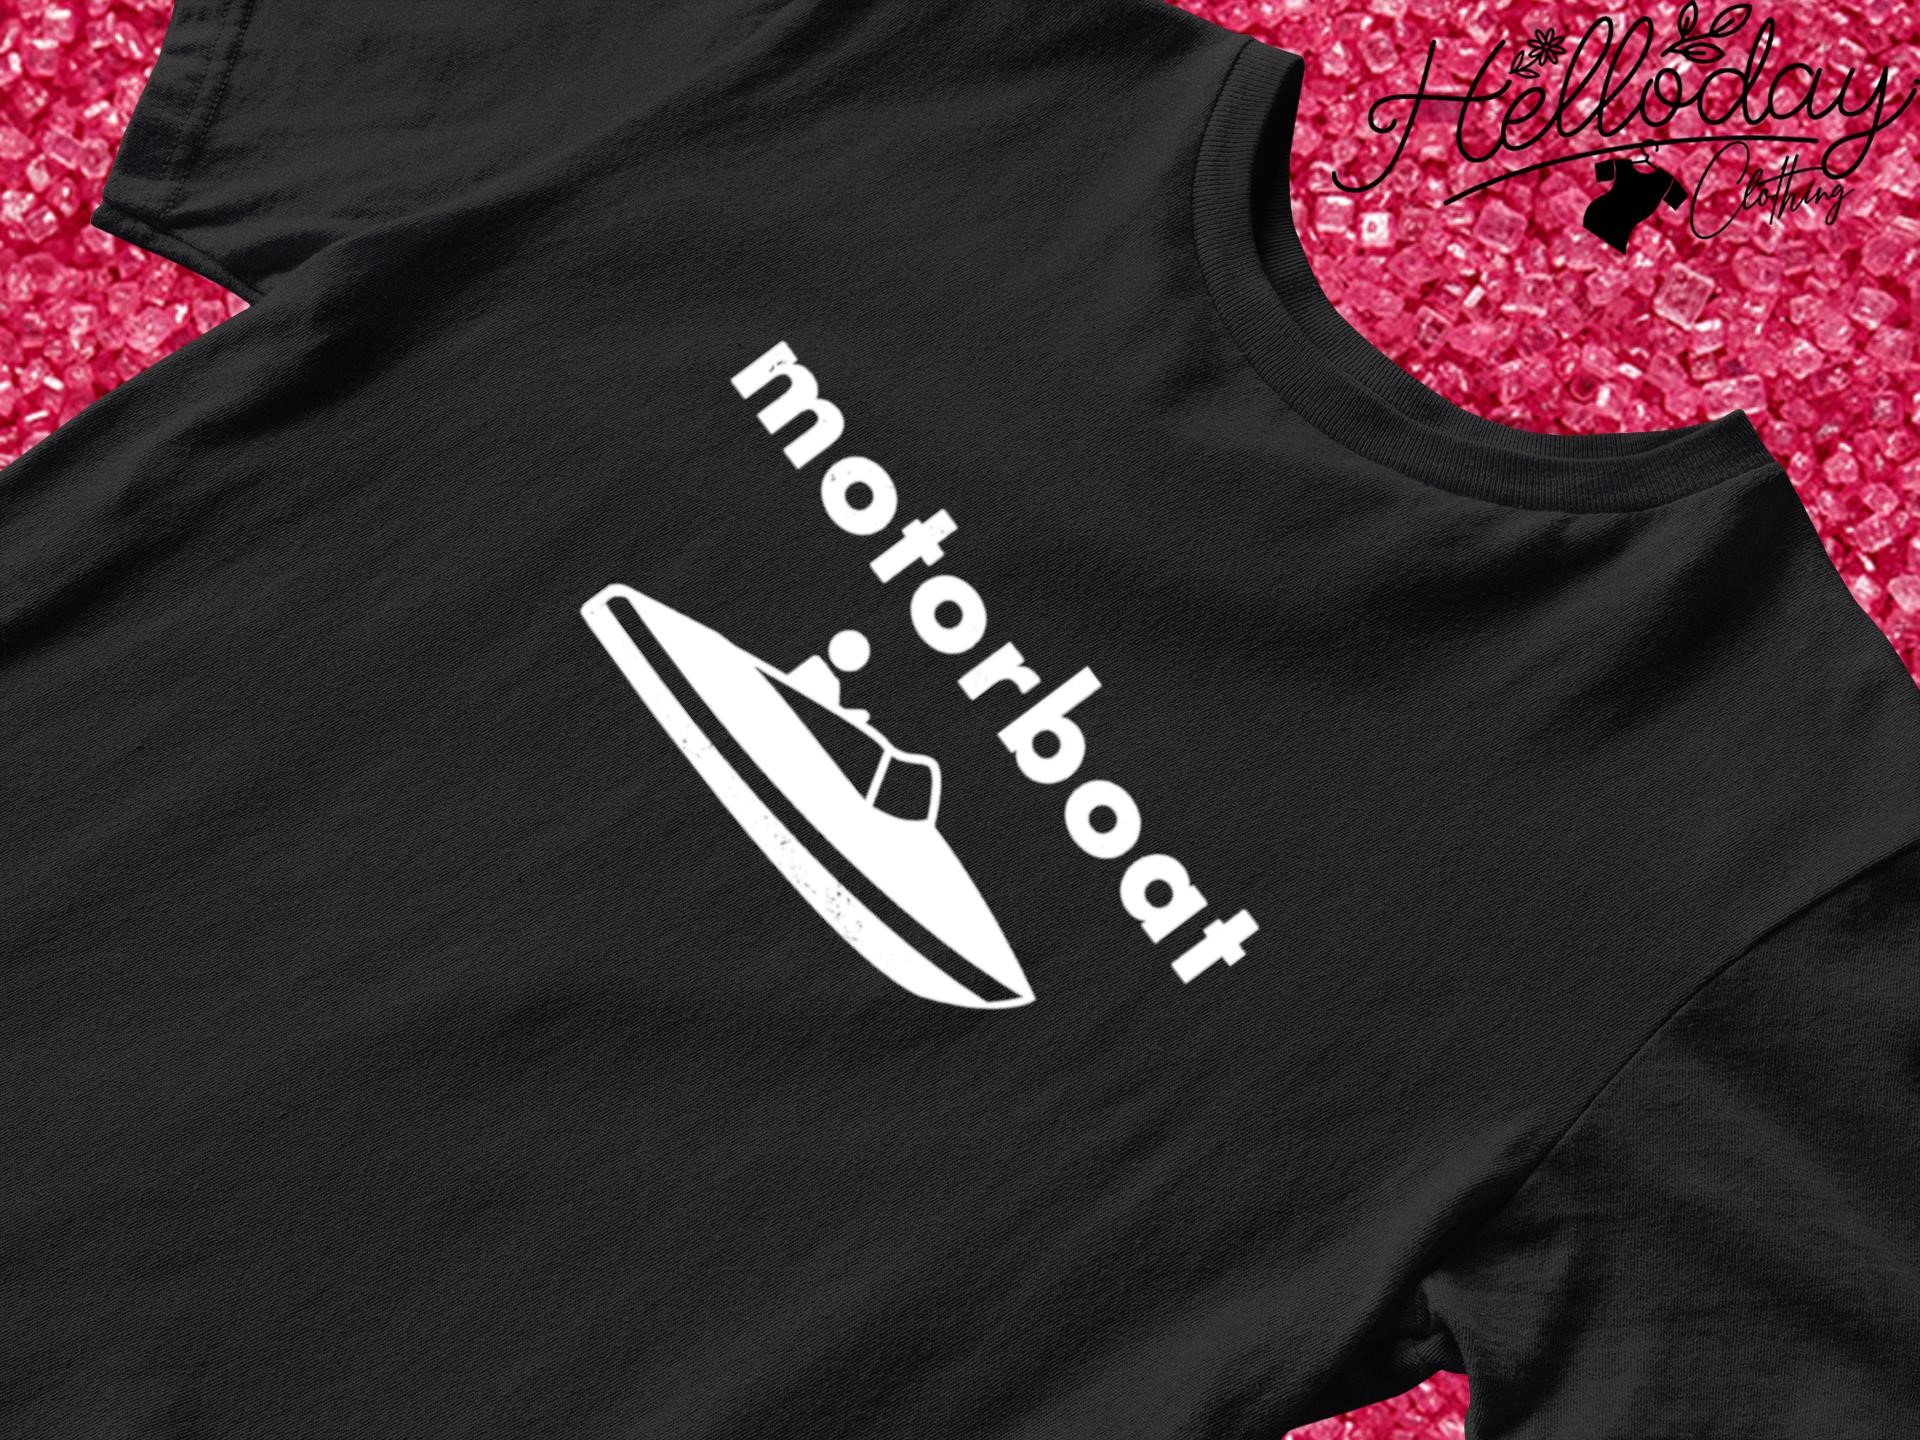 Motorboat Basic shirt